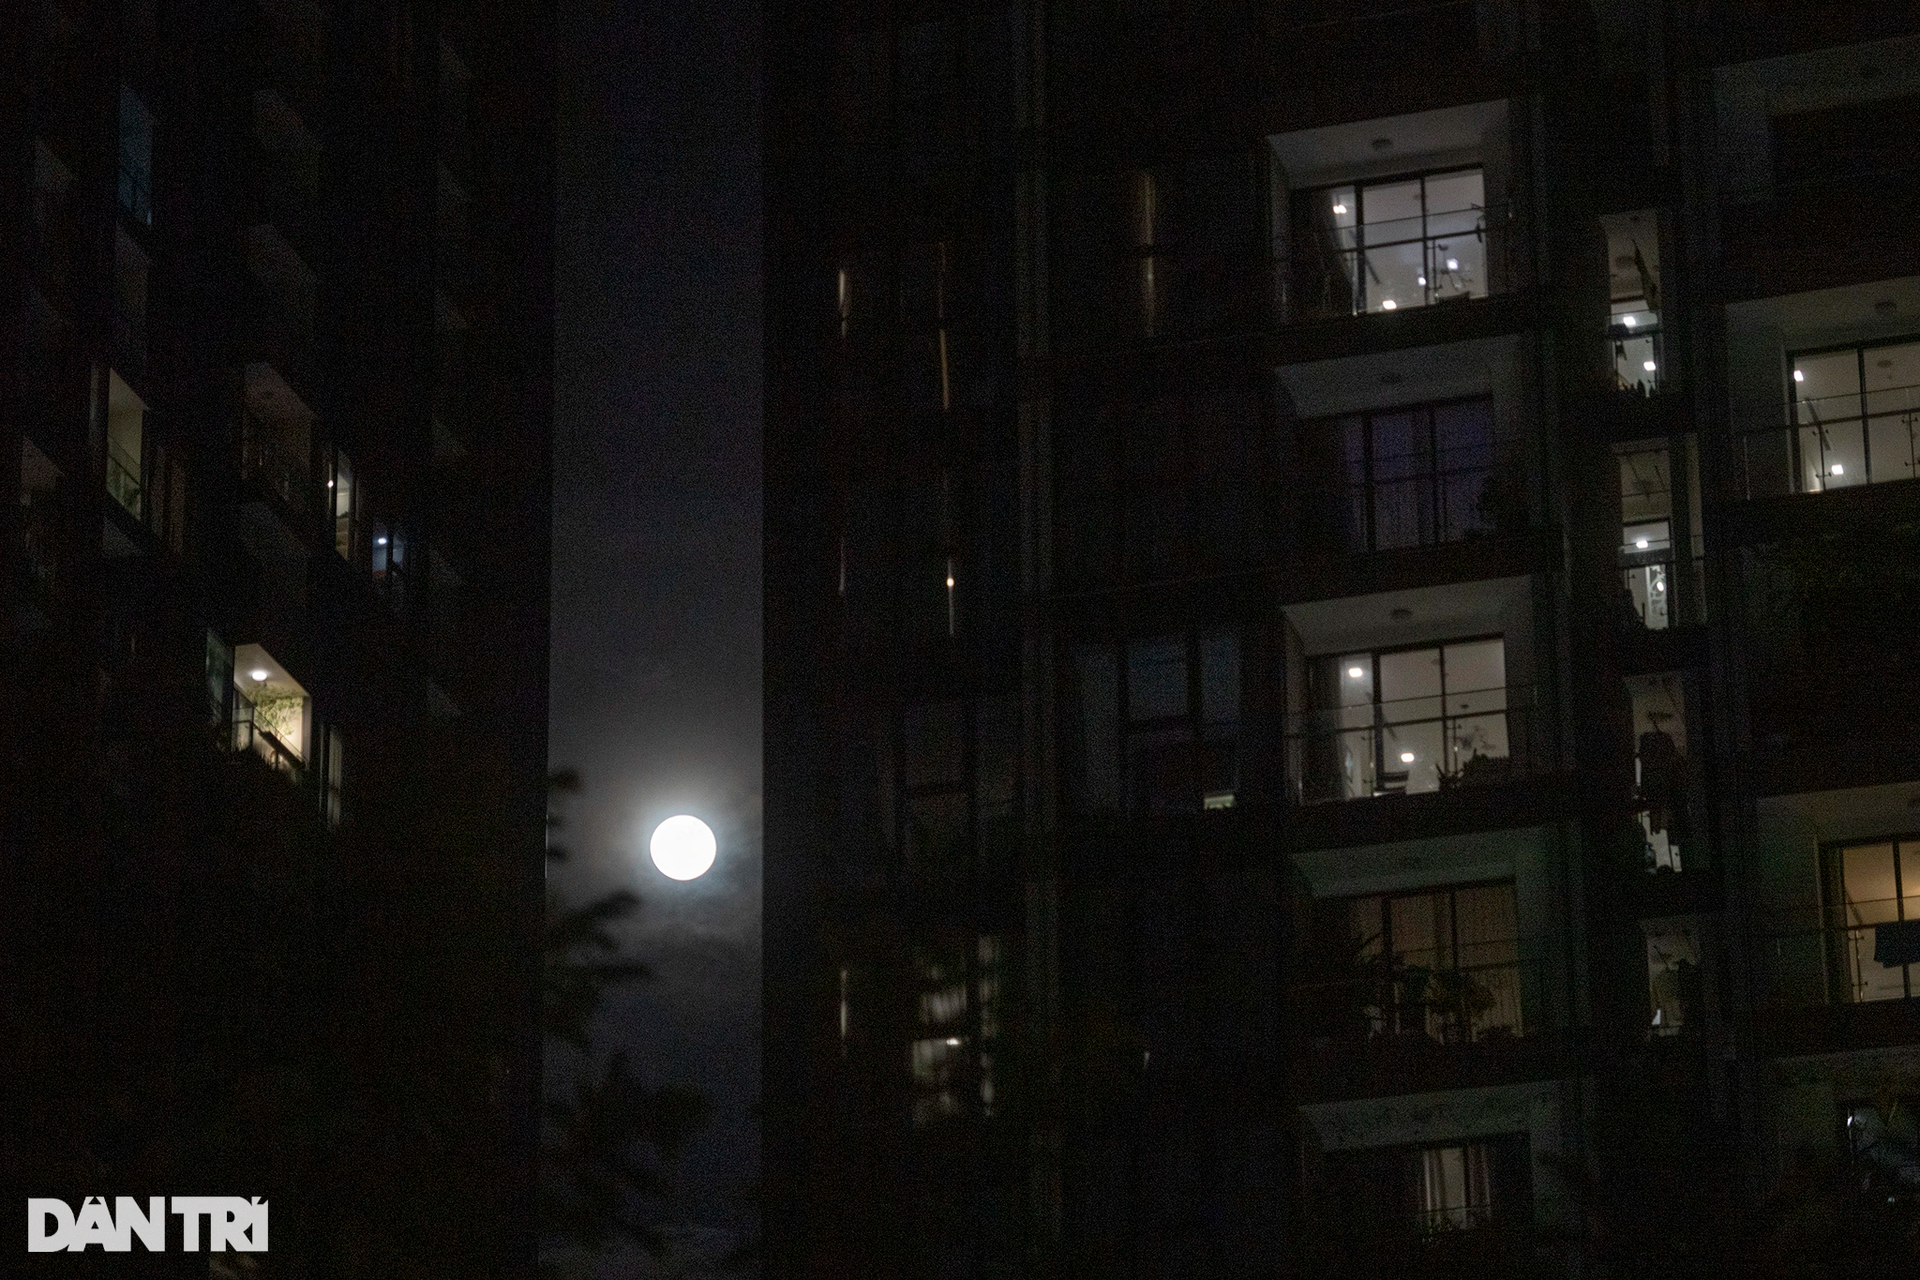 Siêu trăng: Hãy cùng chiêm ngưỡng siêu trăng tròn và sáng rực rỡ trên bầu trời đêm. Bức ảnh sẽ cho bạn những trải nghiệm không thể quên về vẻ đẹp của thiên nhiên.